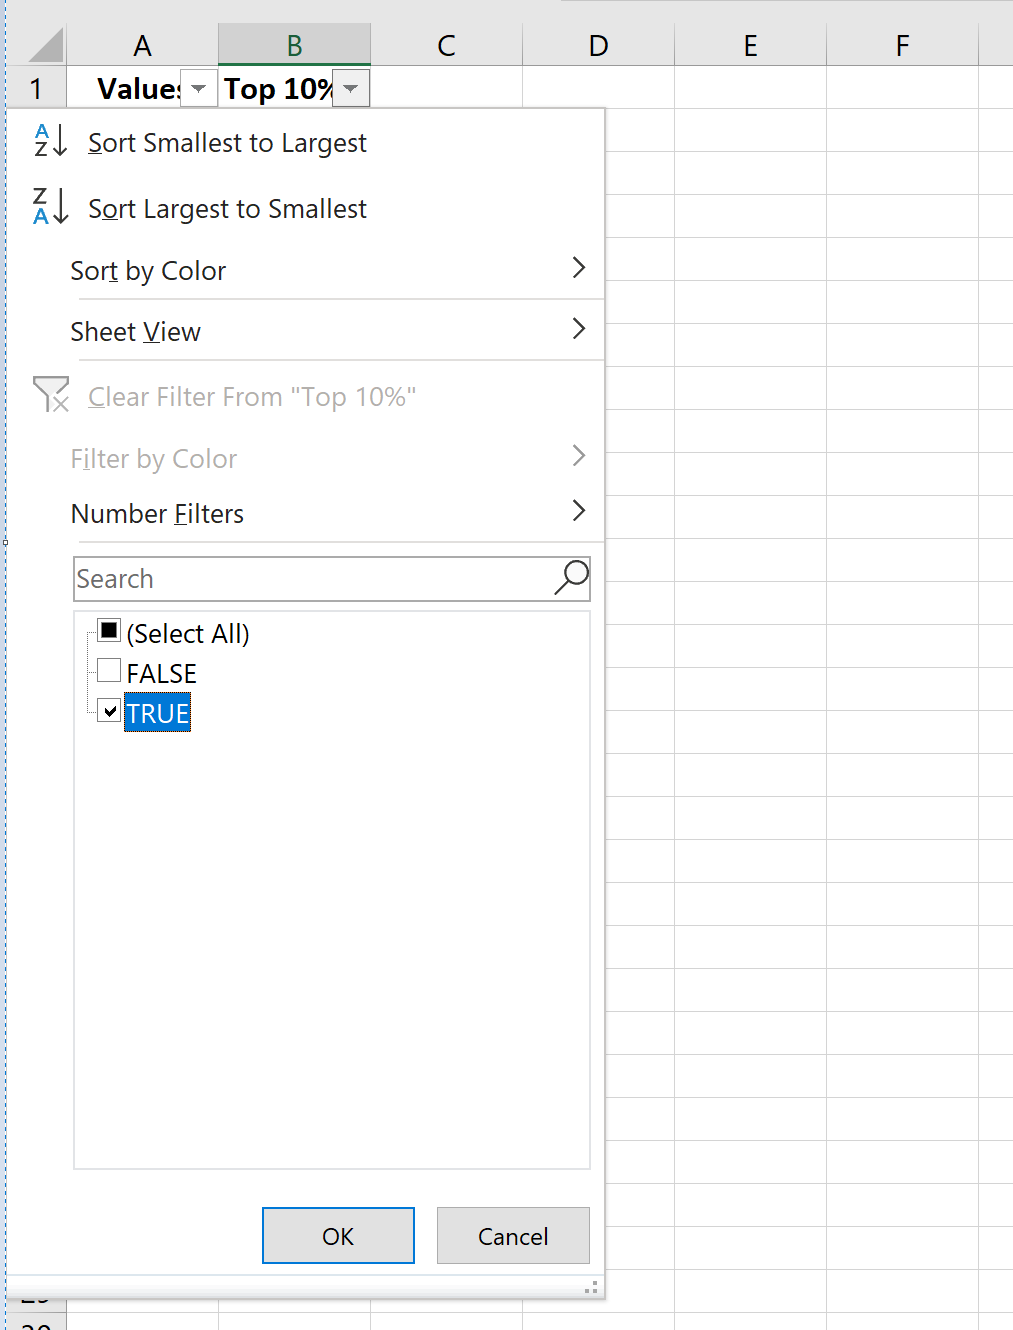 Filter de bovenste 10 procent van de waarden in Excel